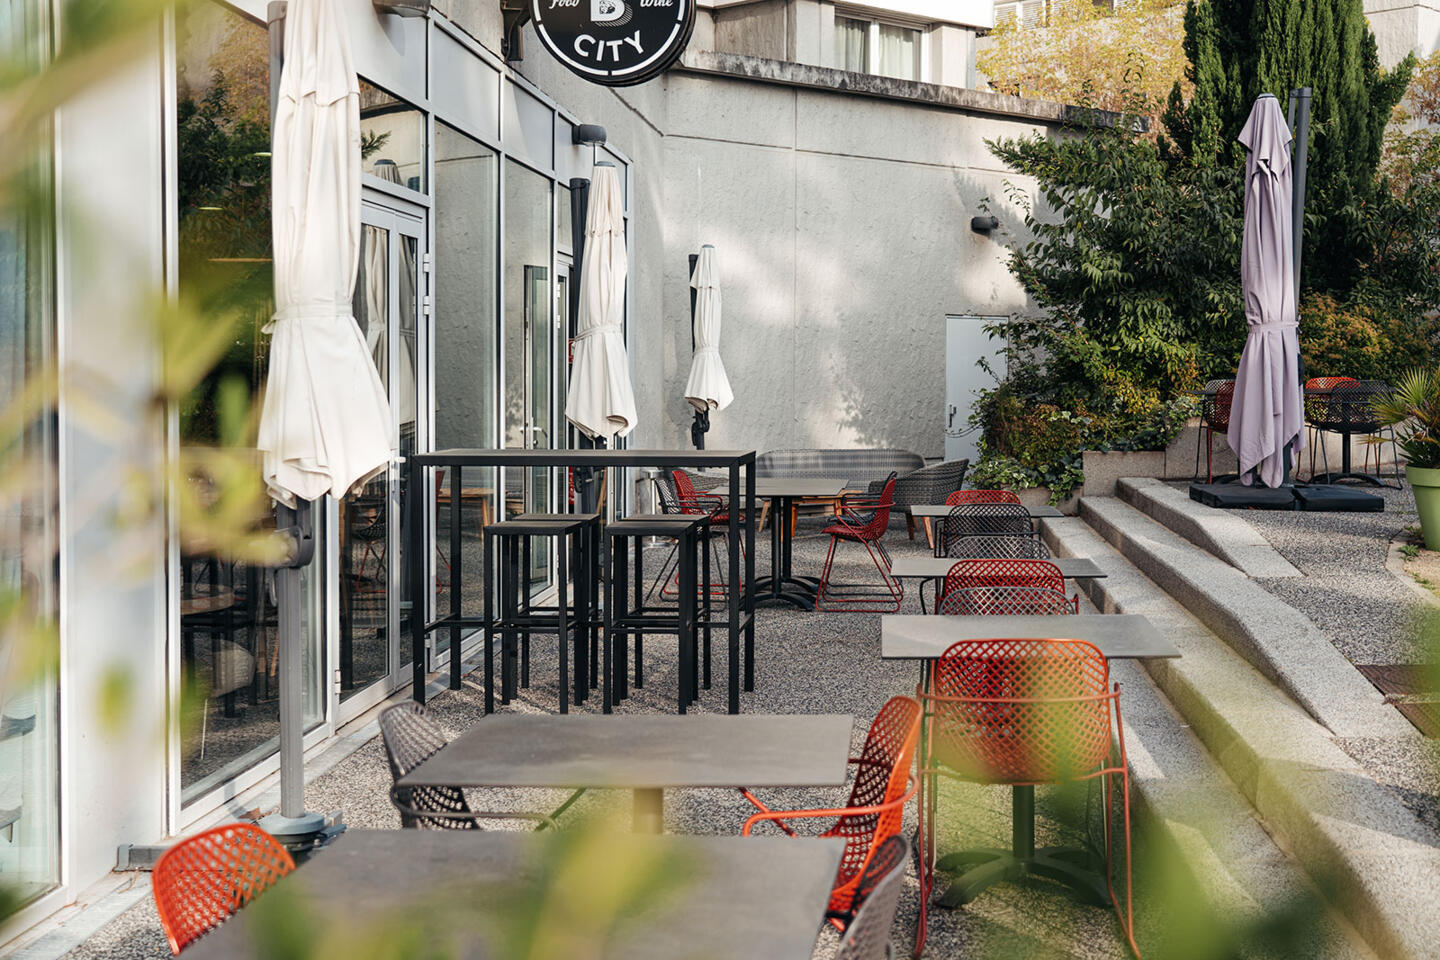 Terrasse tranquille du restaurant Bistrot City à Lyon Cité Internationale, avec des tables et chaises modernes en métal noir et des assises orange, des parasols fermés, dans un cadre urbain agrémenté de verdure, invitant à la détente.